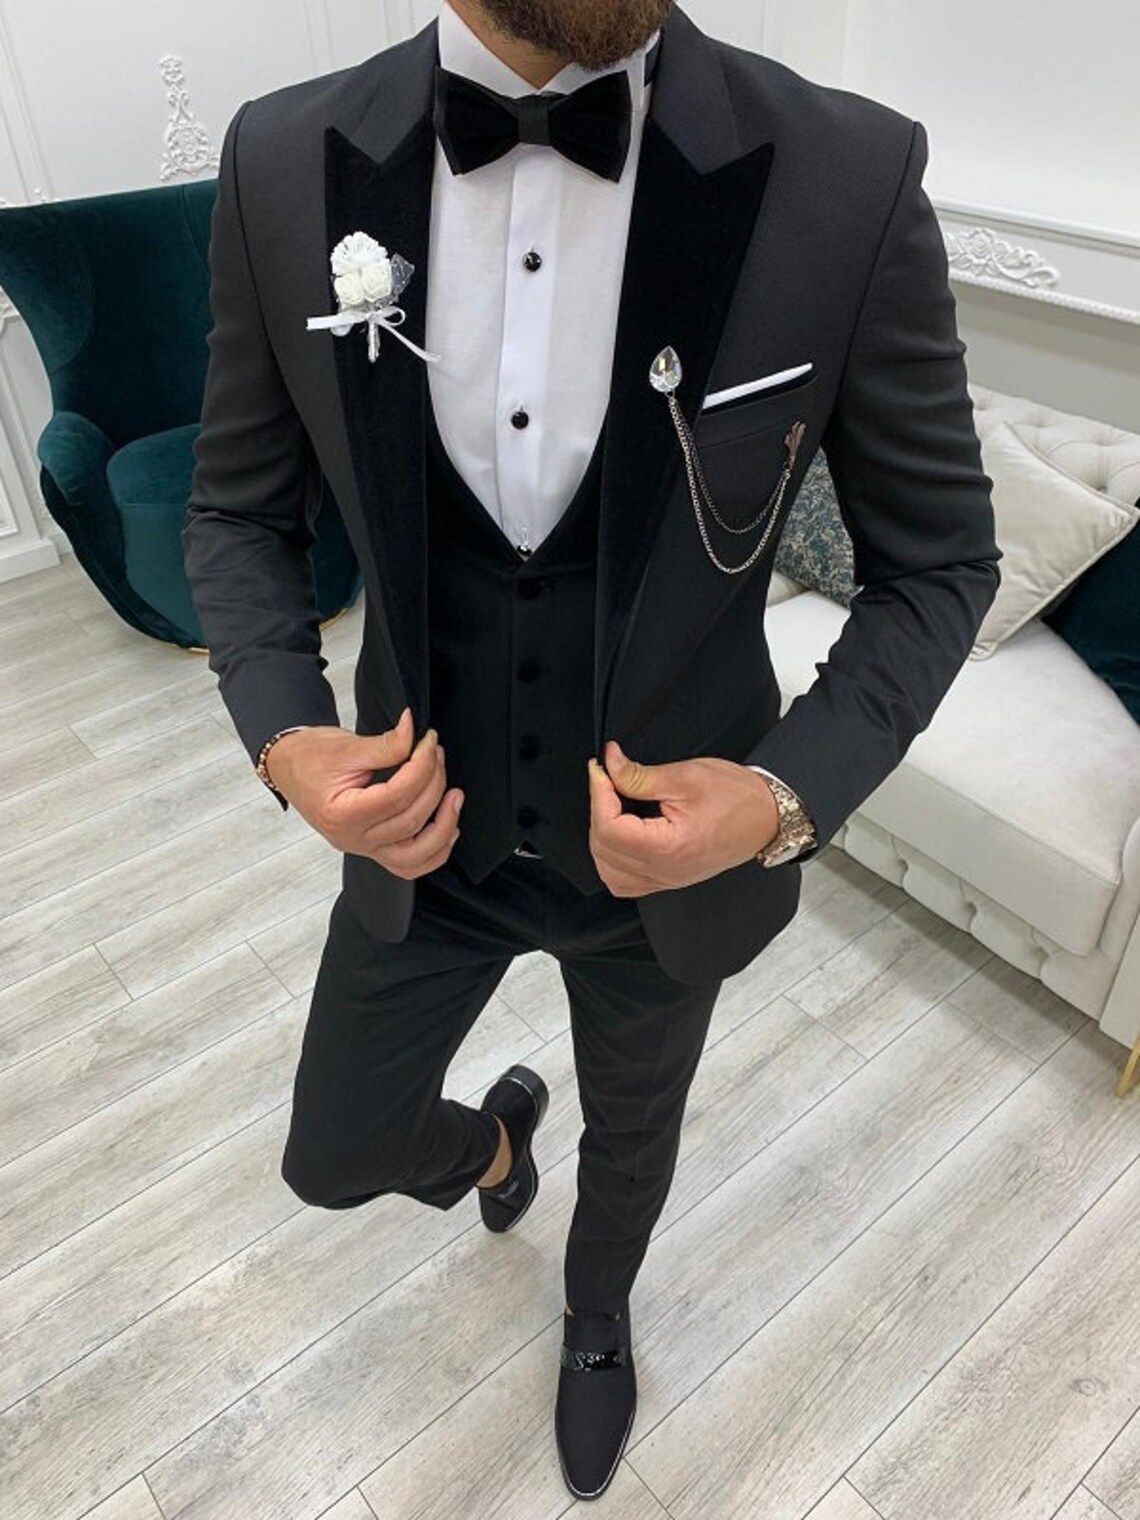 Men Suits Black Wedding Suit Black Tuxedo 3 Piece One Button | Etsy